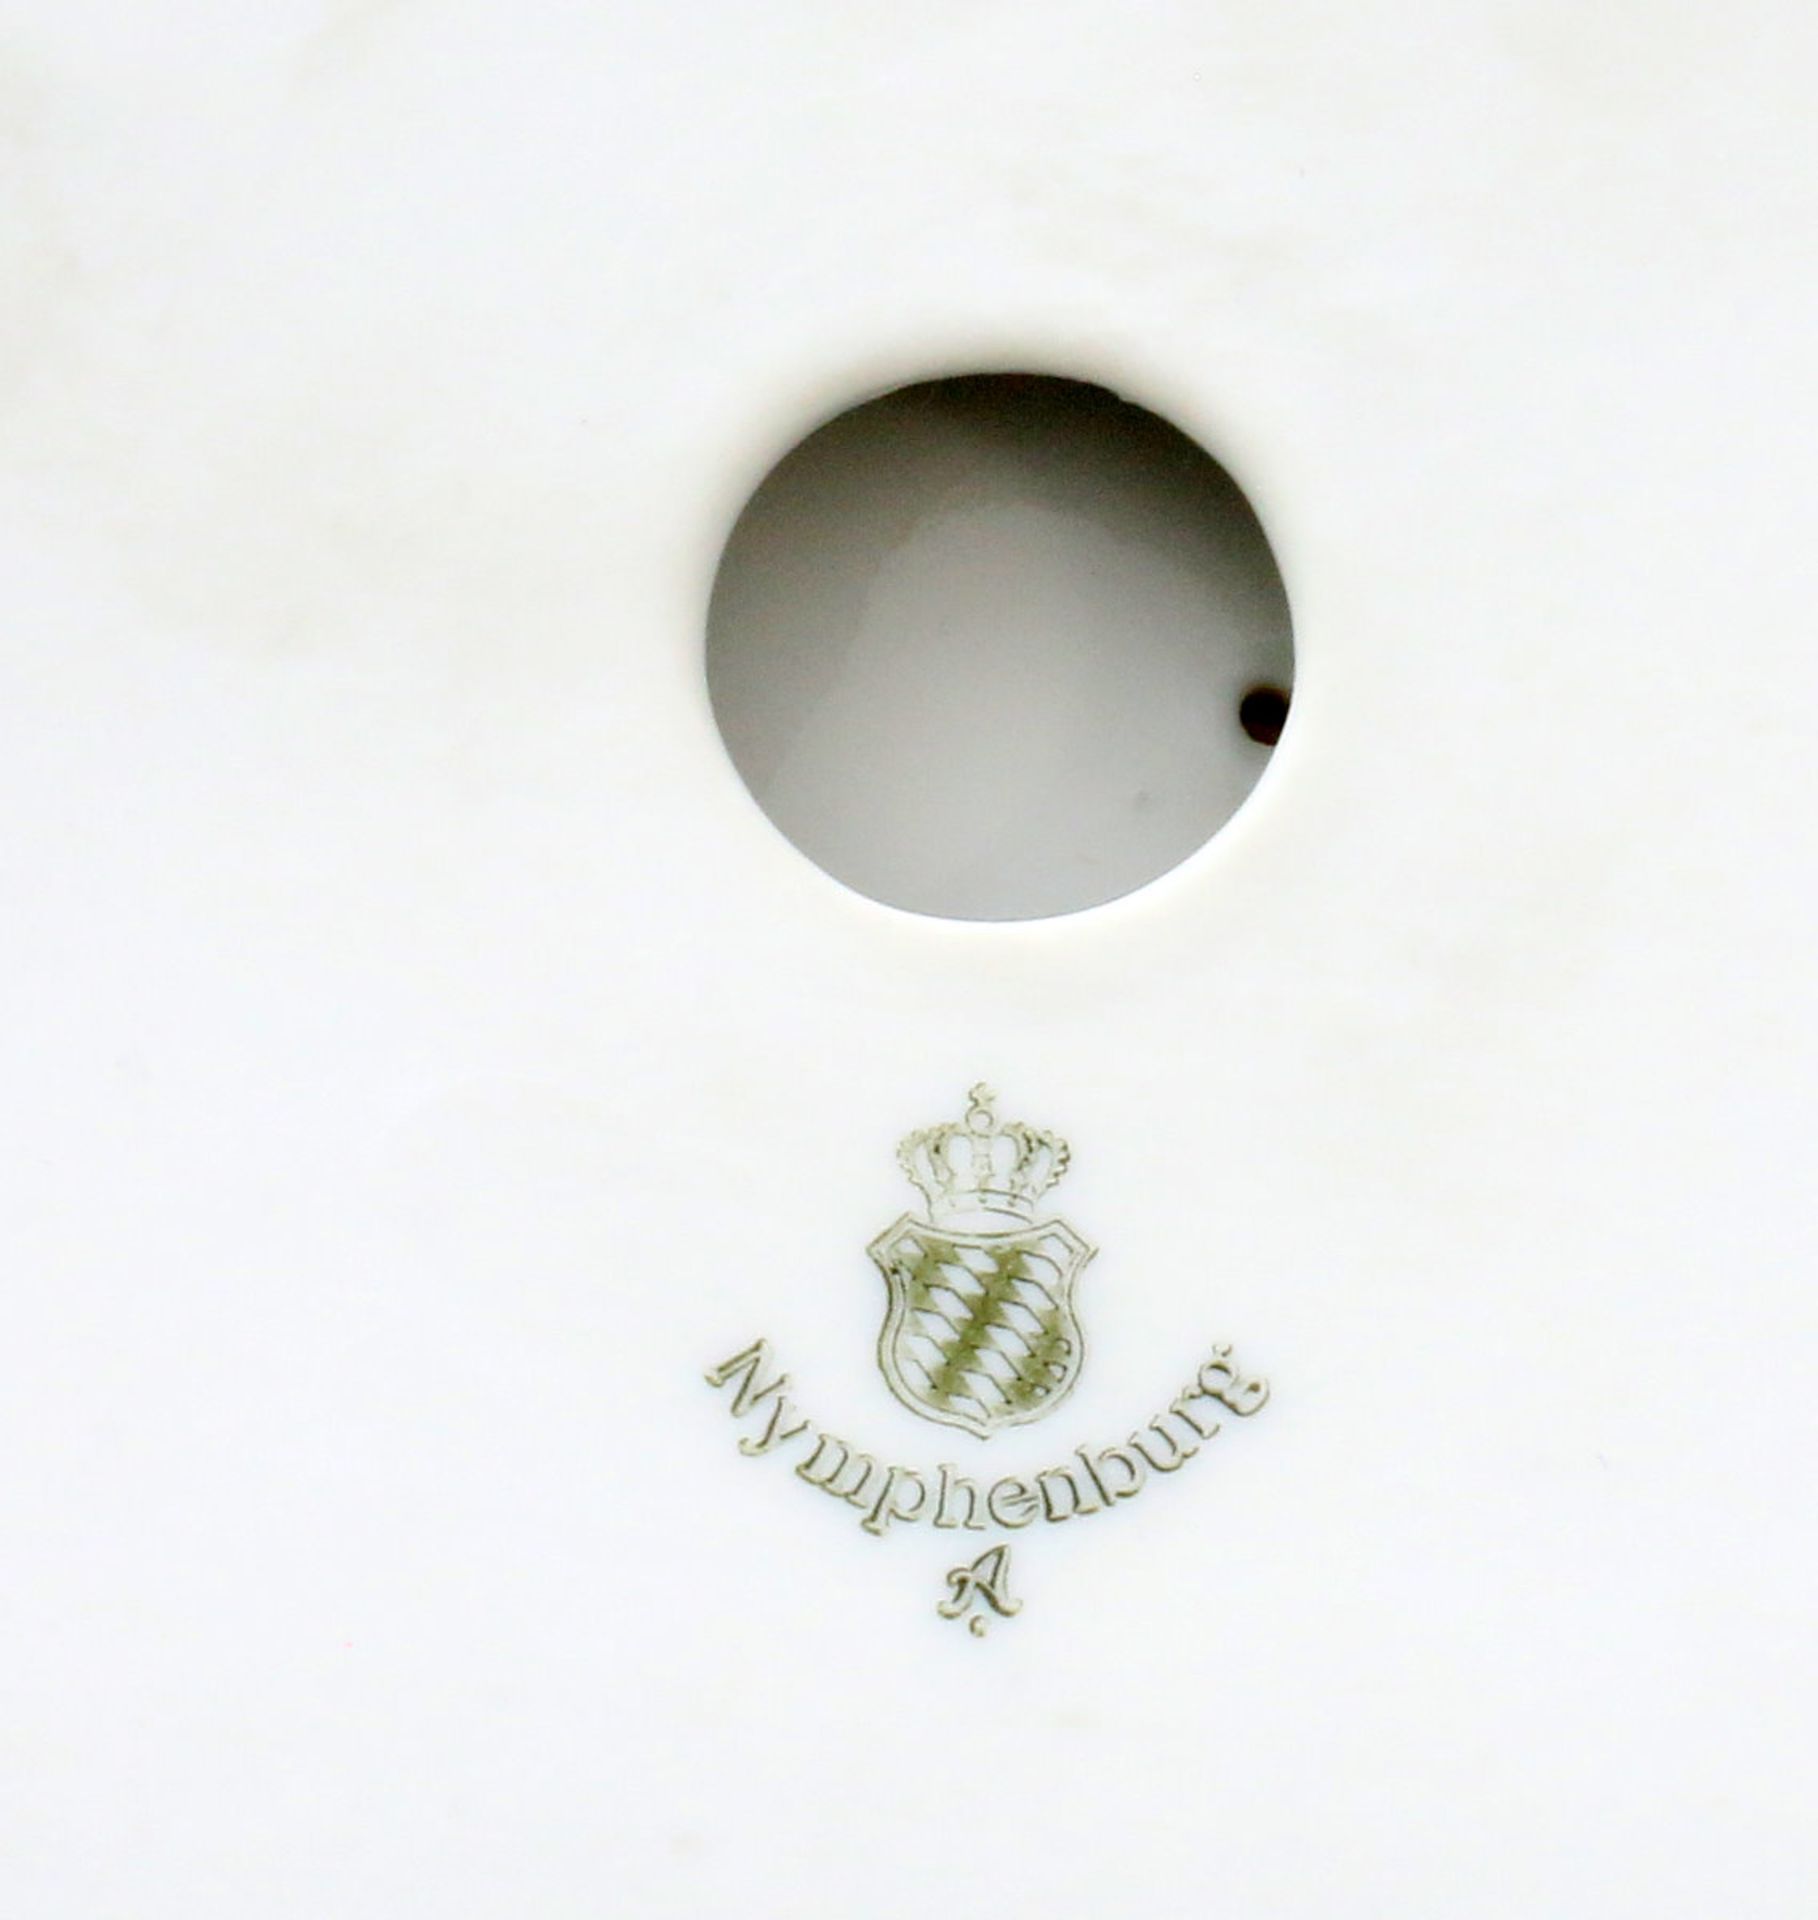 2 Nymphenburg Löwen Stehender, bekrönter Löwe mit Wappenschild "IL" für König Ludwig, - Bild 8 aus 8